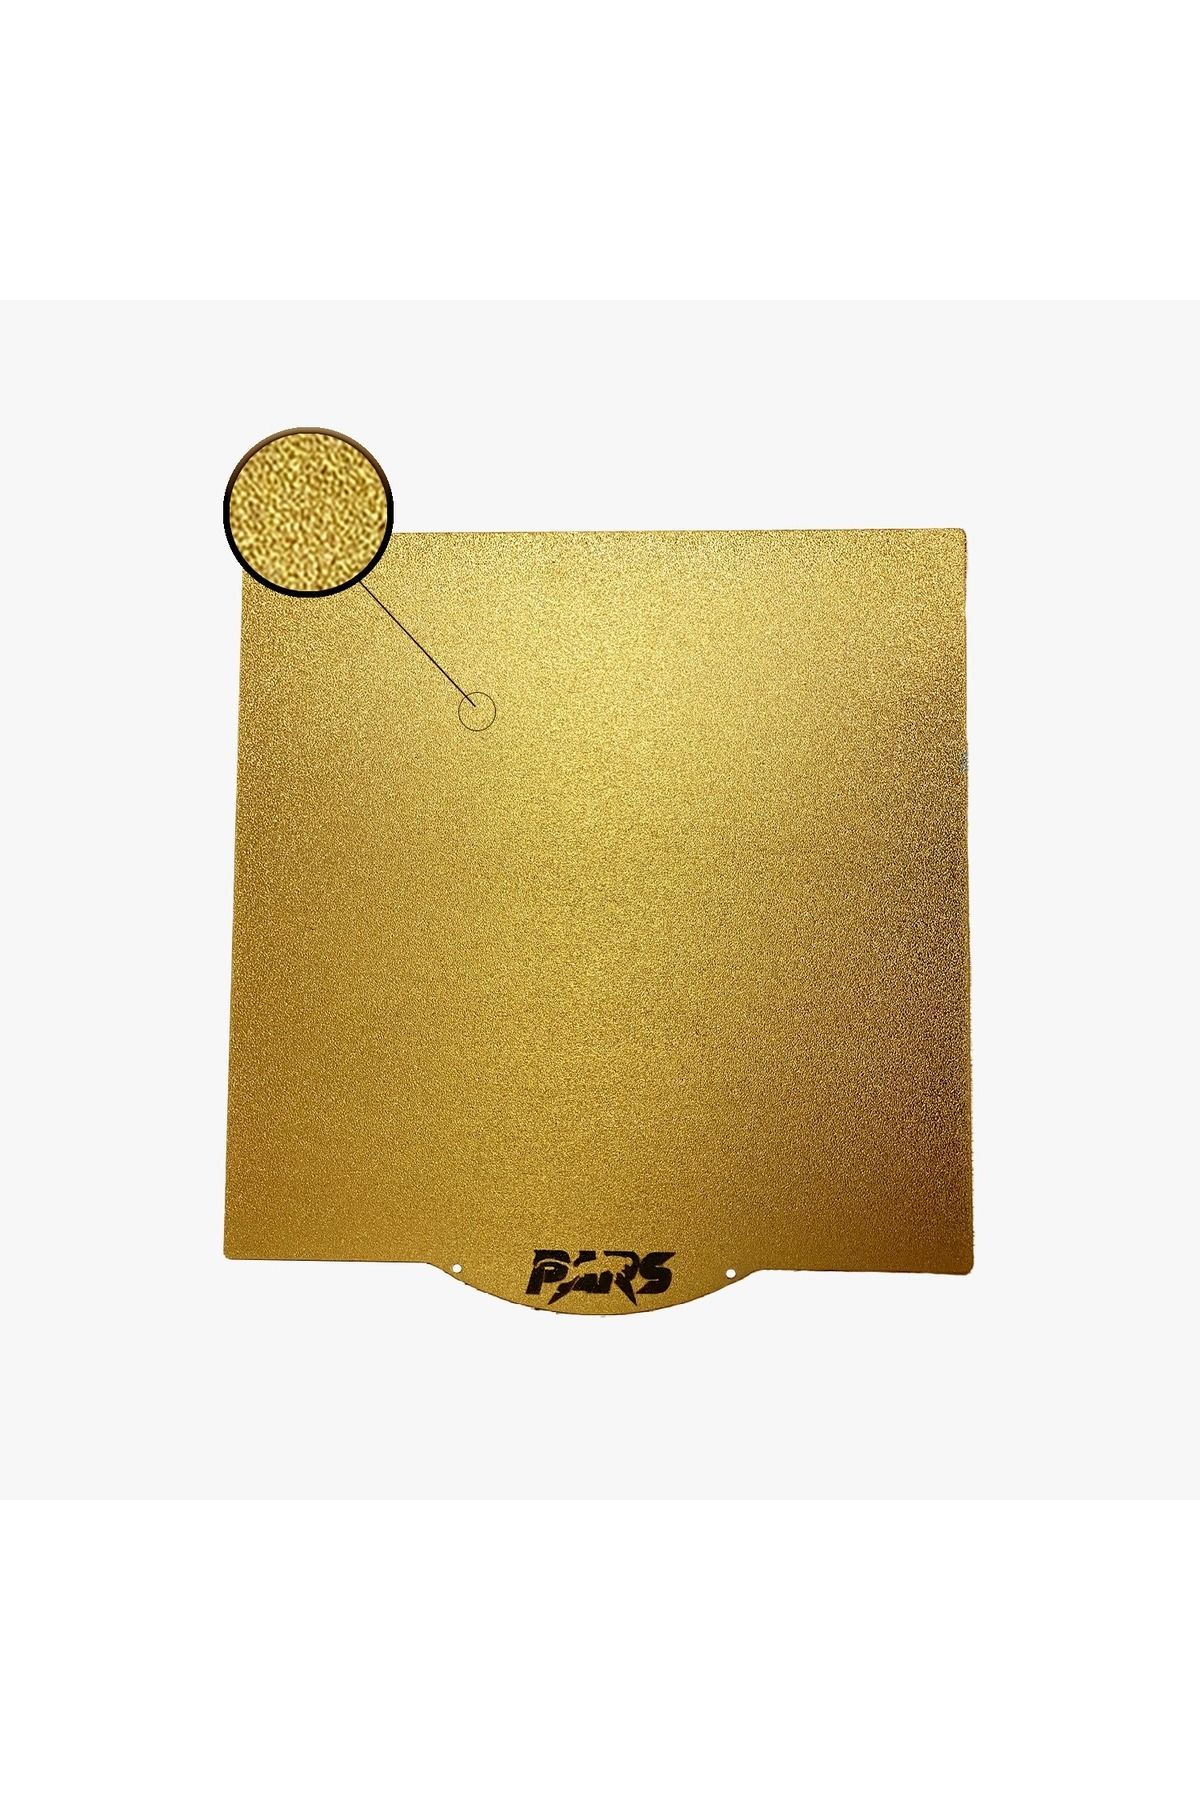 Pars 420x430 MM Pars Gold Pei Kaplı Özel Yay Çeliği Tabla Magnetsiz